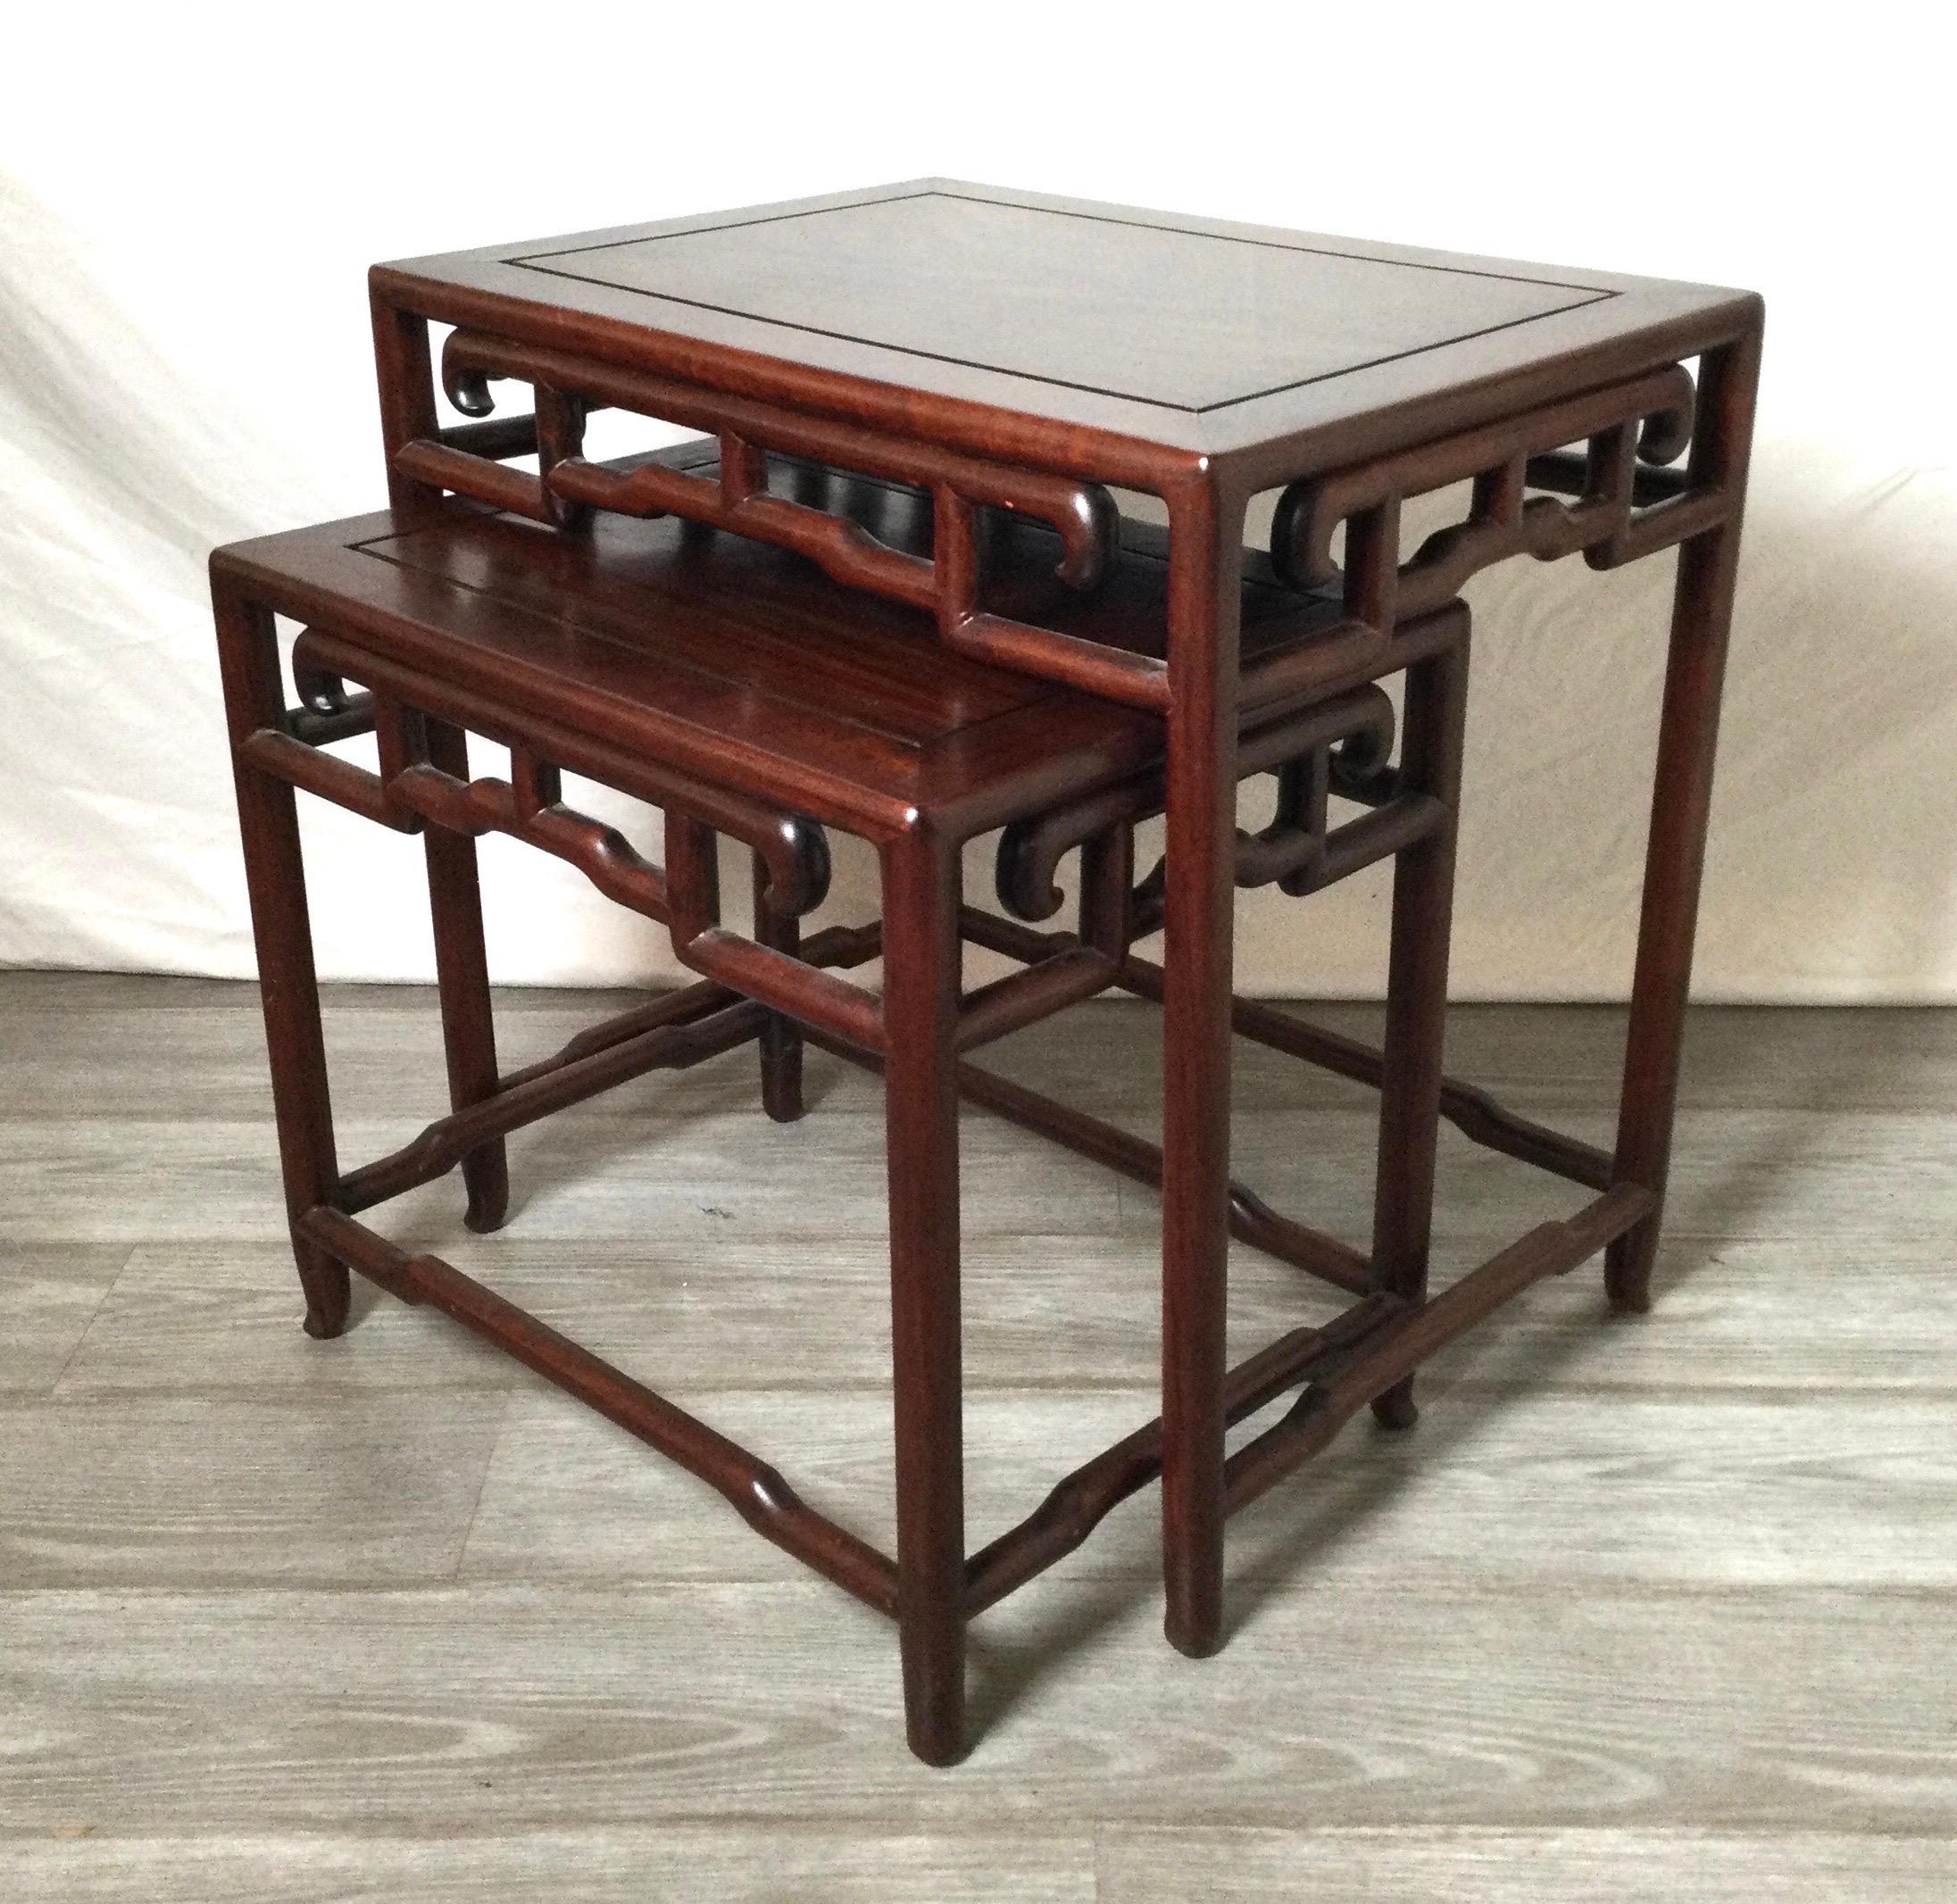 Ein Satz von 2 antiken chinesischen, handgeschnitztenhongmu-Tischen als Schachtel. Der kleinere Tisch passt gut in den größeren Tisch, sodass er leicht zugänglich ist. 22 breit, 22,25 hoch und 16 tief.